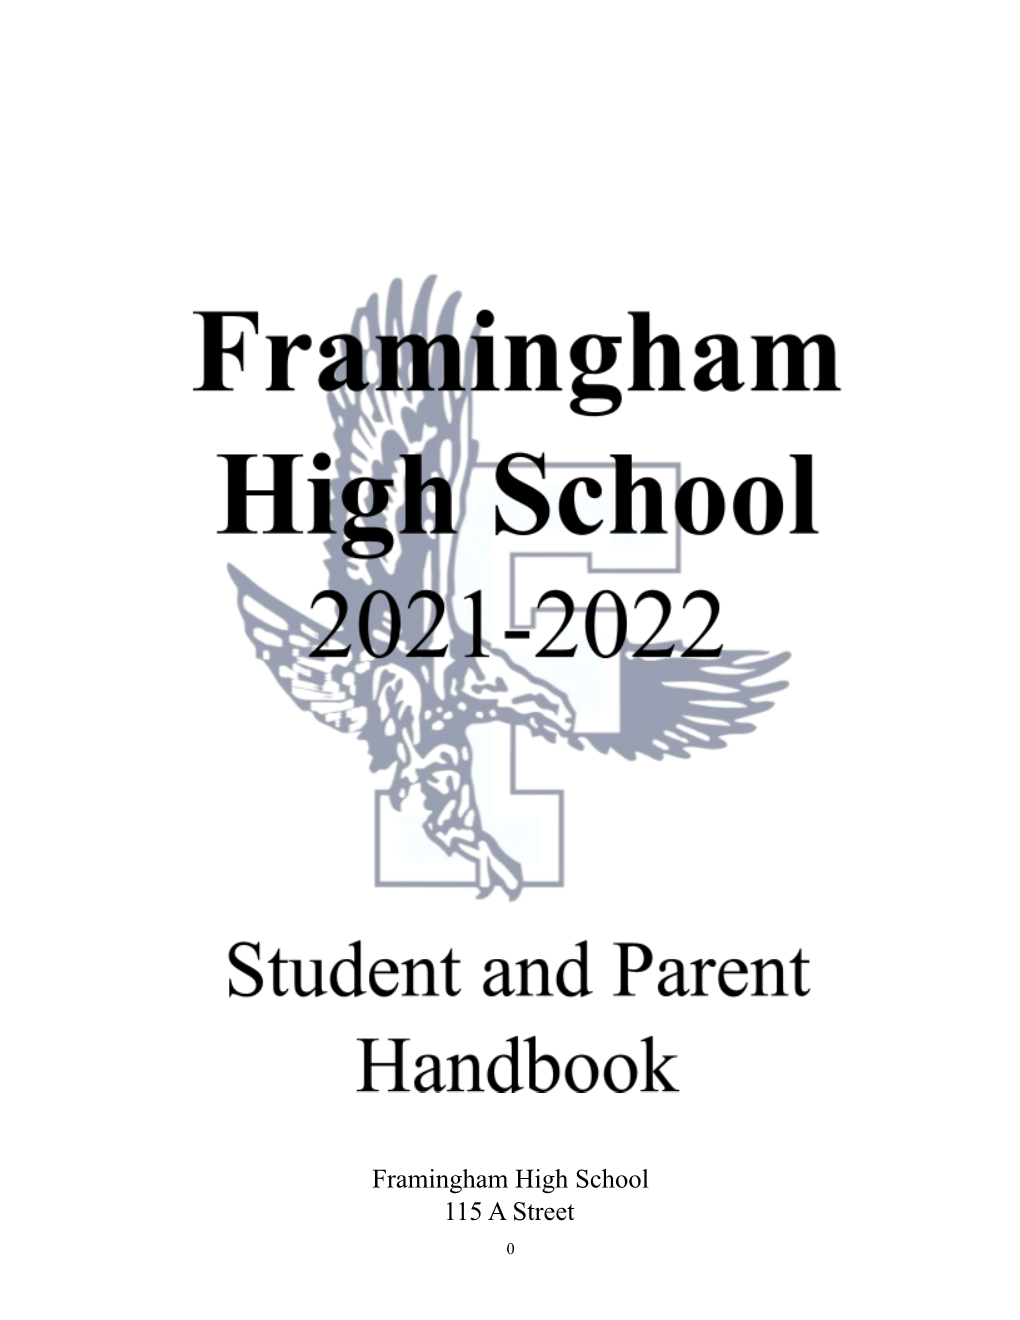 FOR SC: FHS 2021-2022 Student Handbook